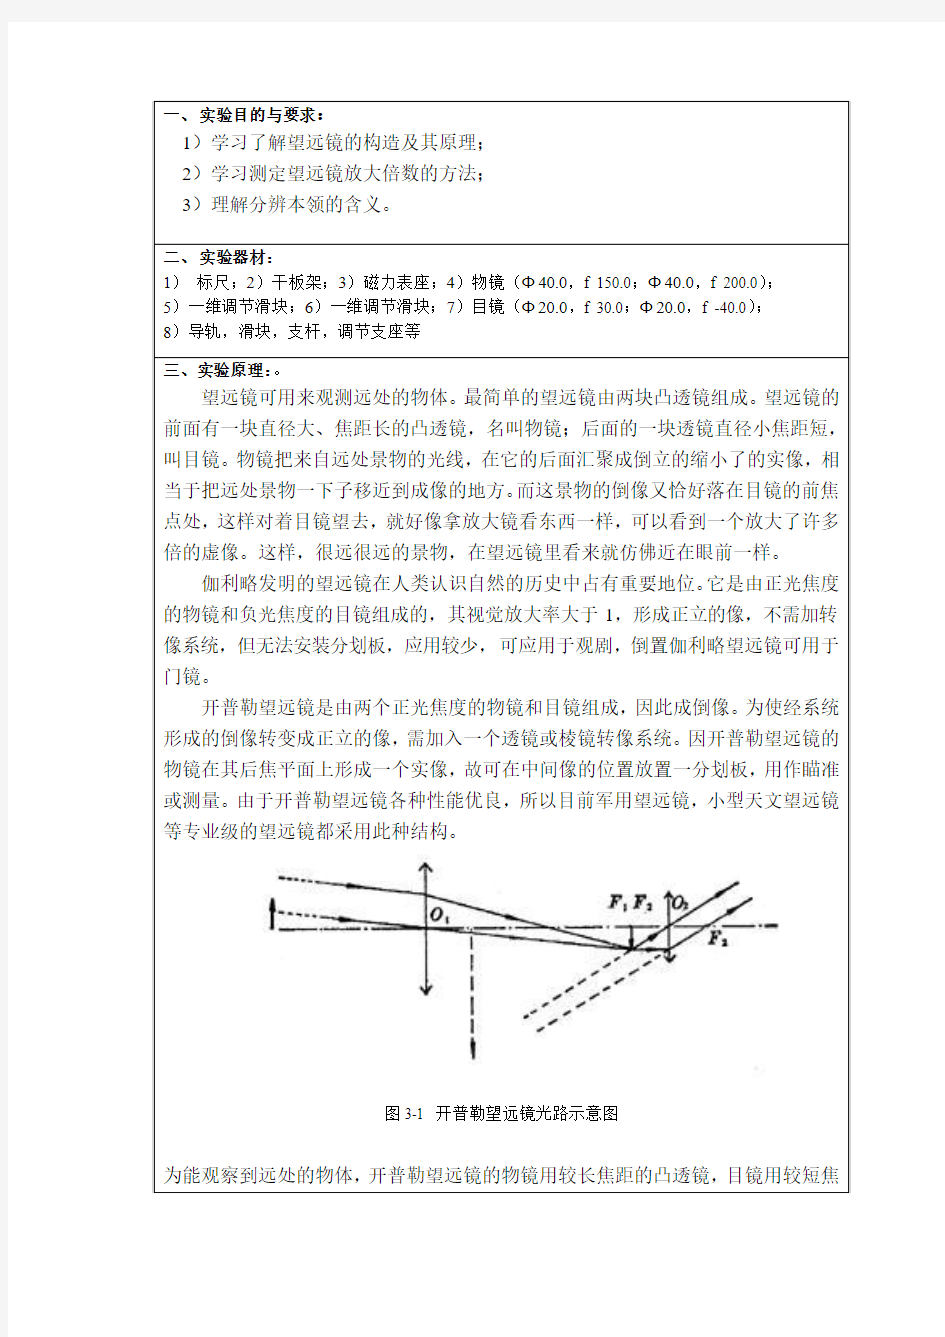 深圳大学 望远系统的搭建和参数测量